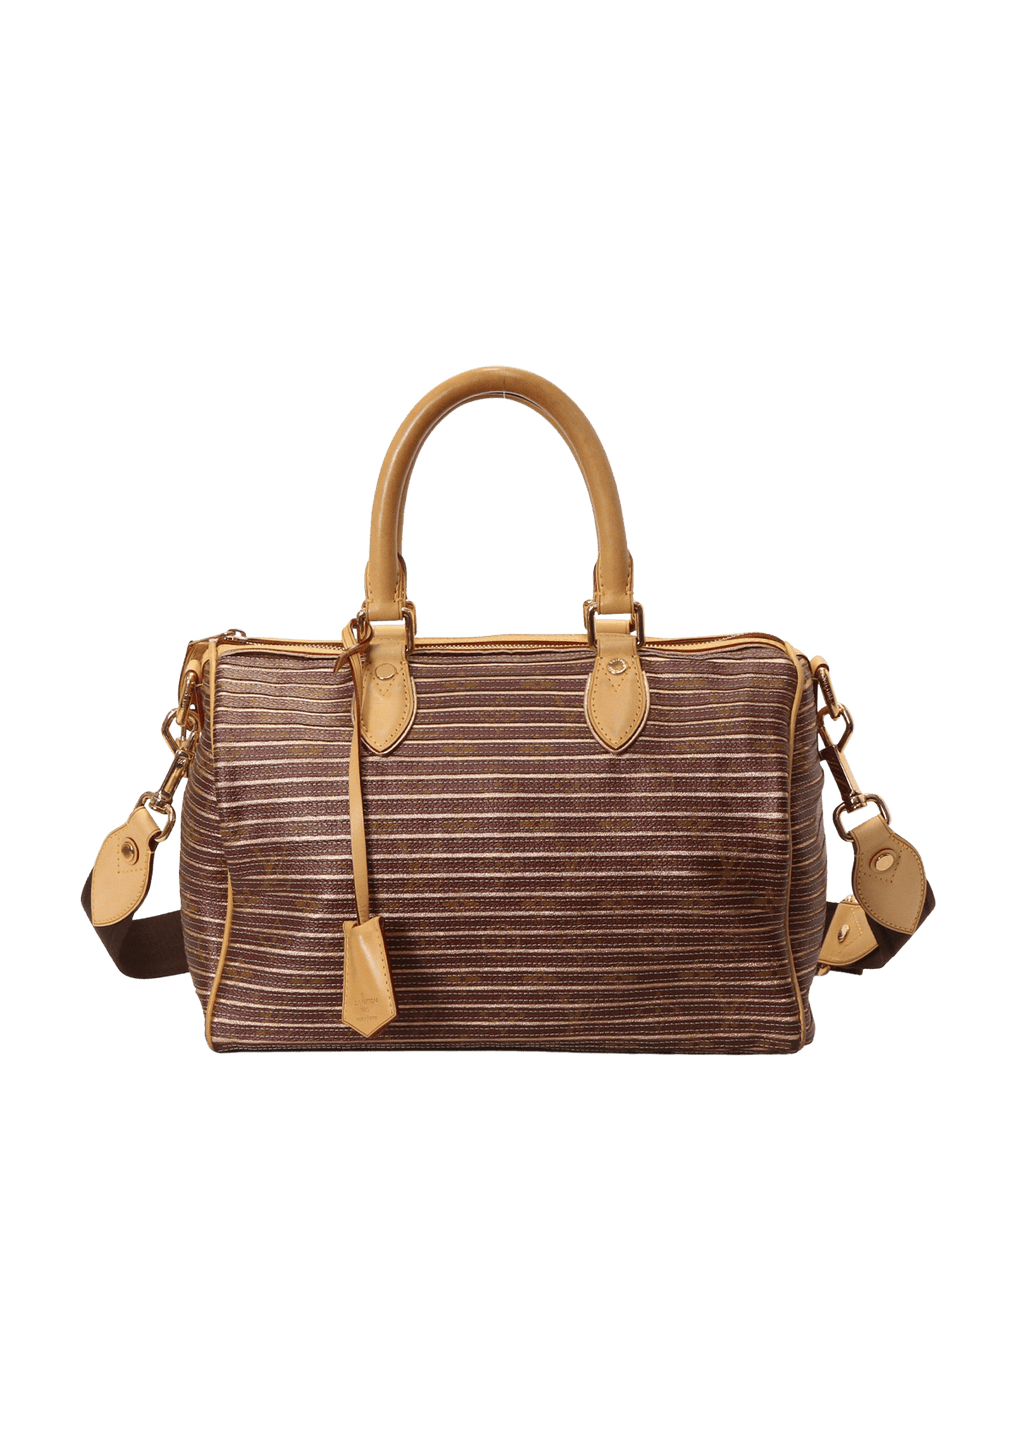 Louis Vuitton Limited Edition Peche Monogram Eden Speedy 30 Bag